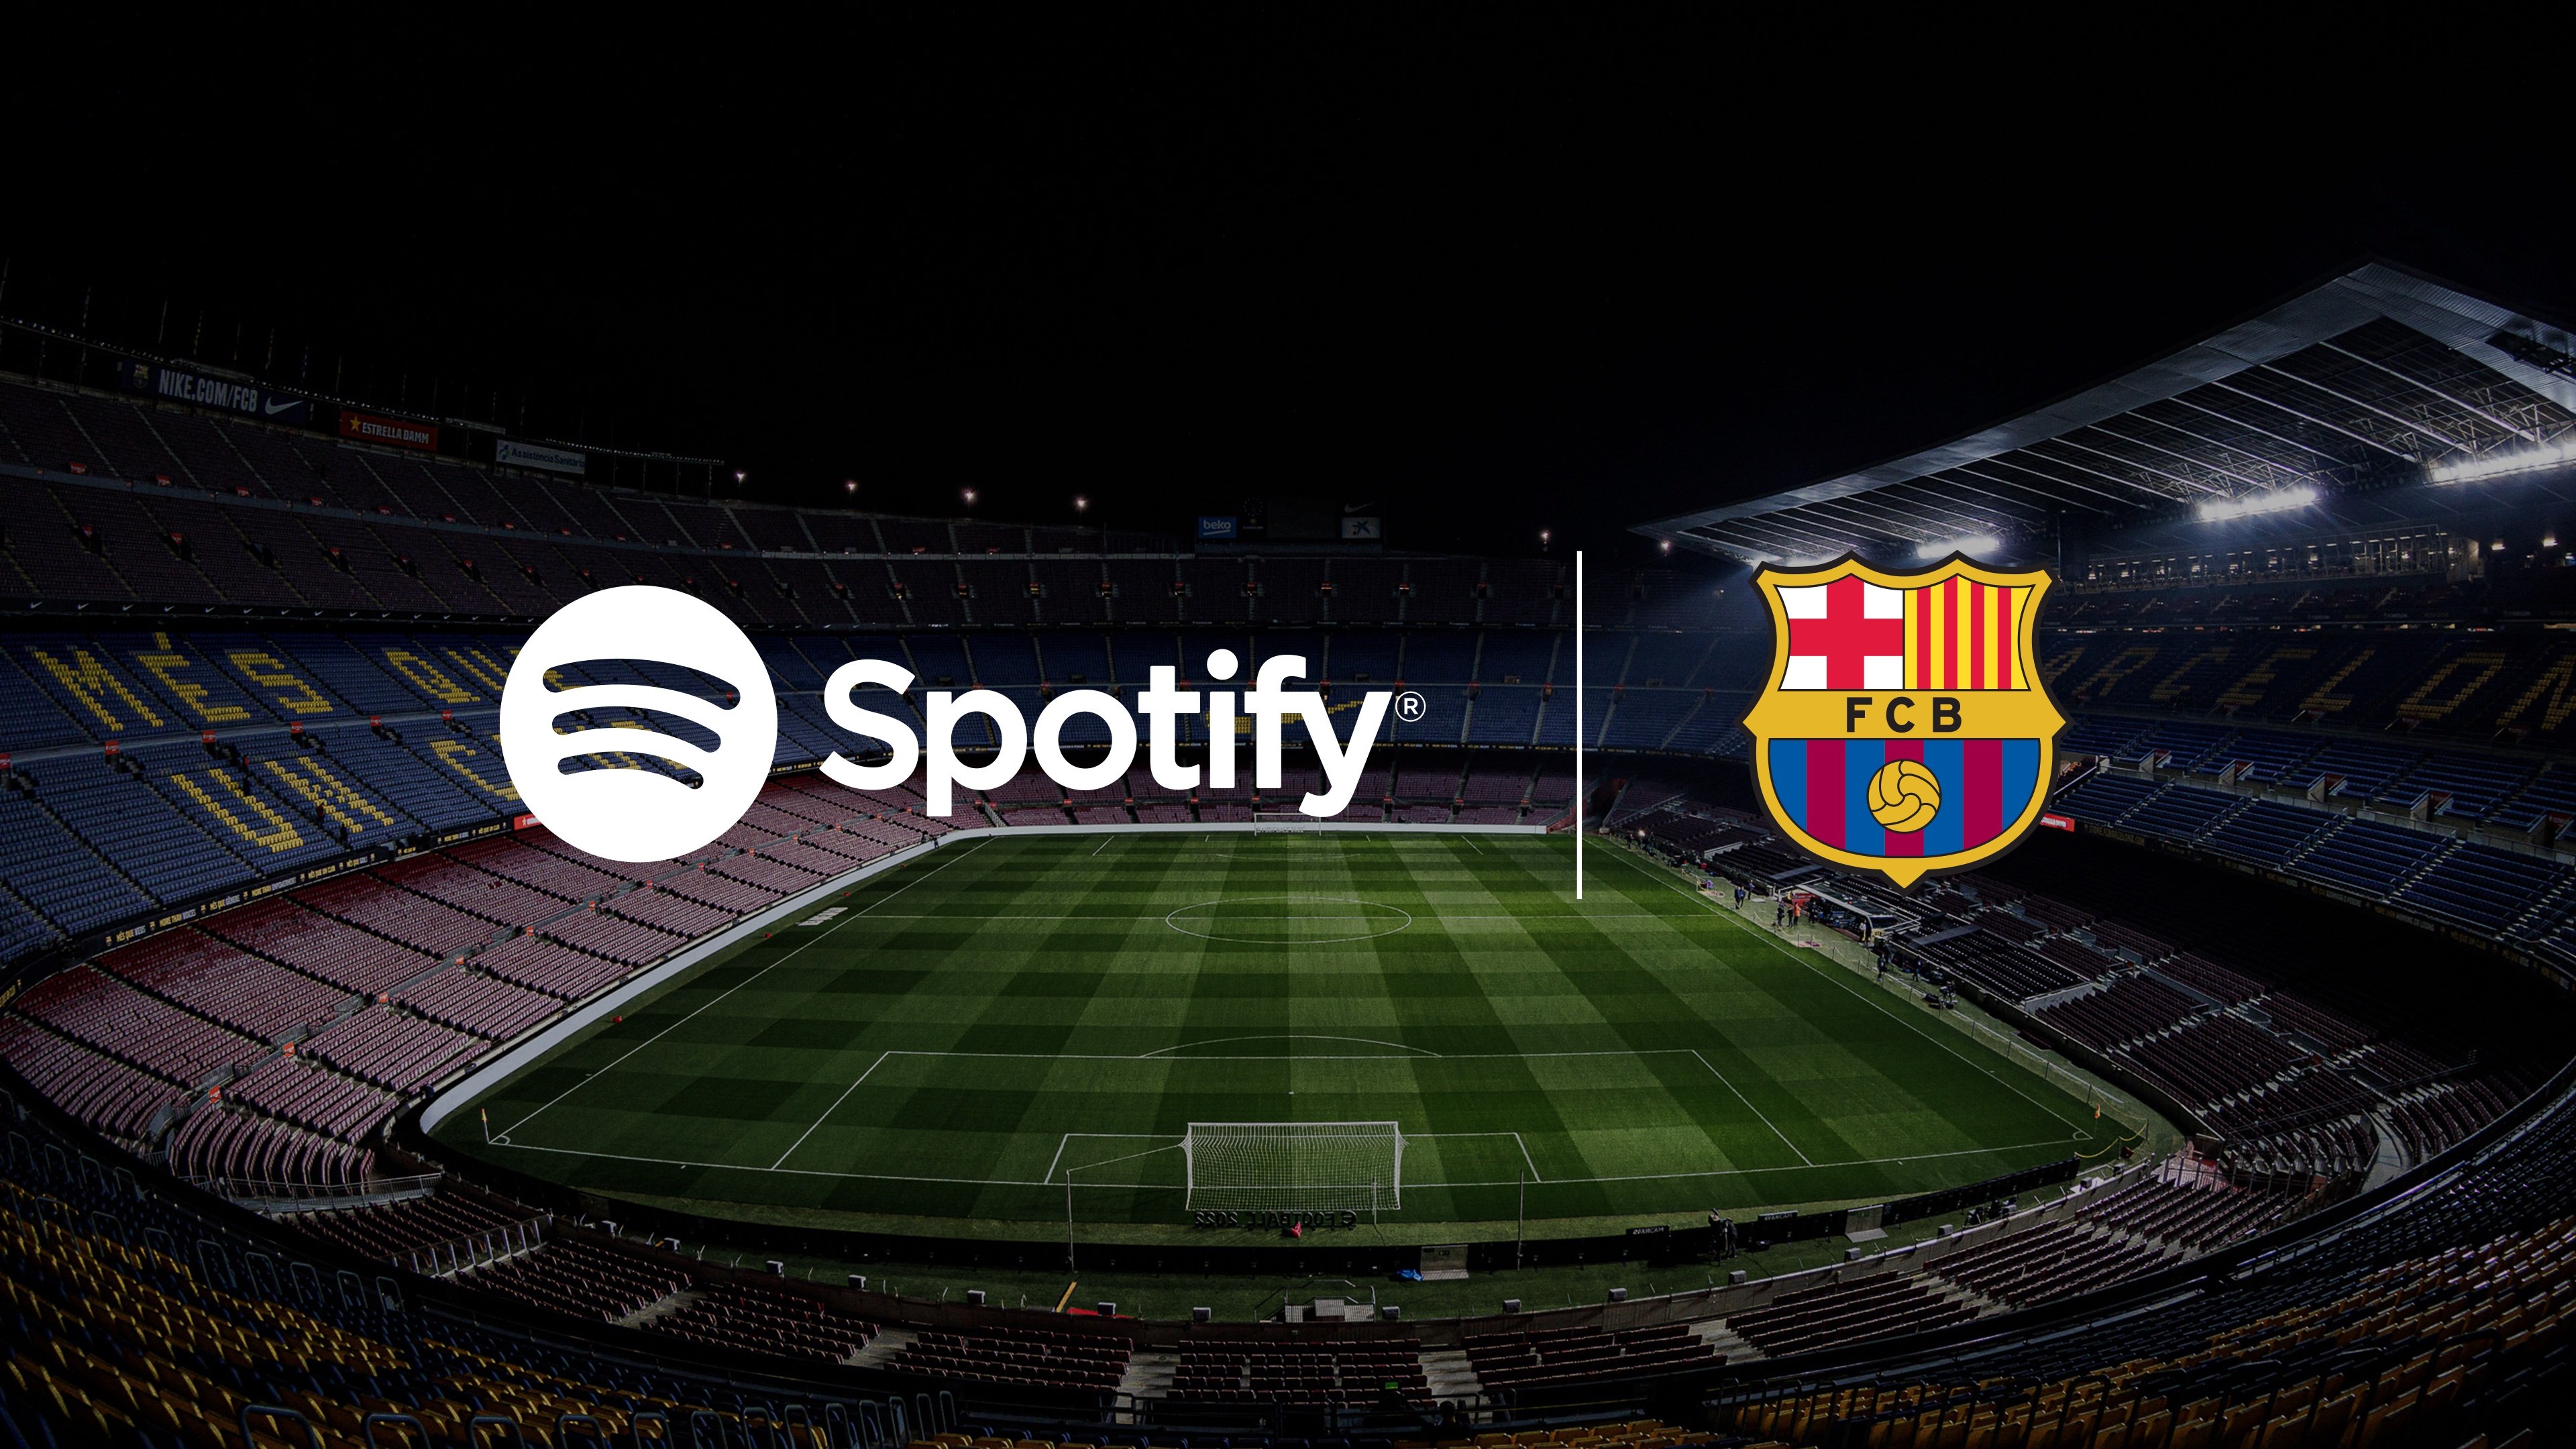 Acord històric del Barça: Spotify, nou patrocinador principal, posarà nom al Camp Nou